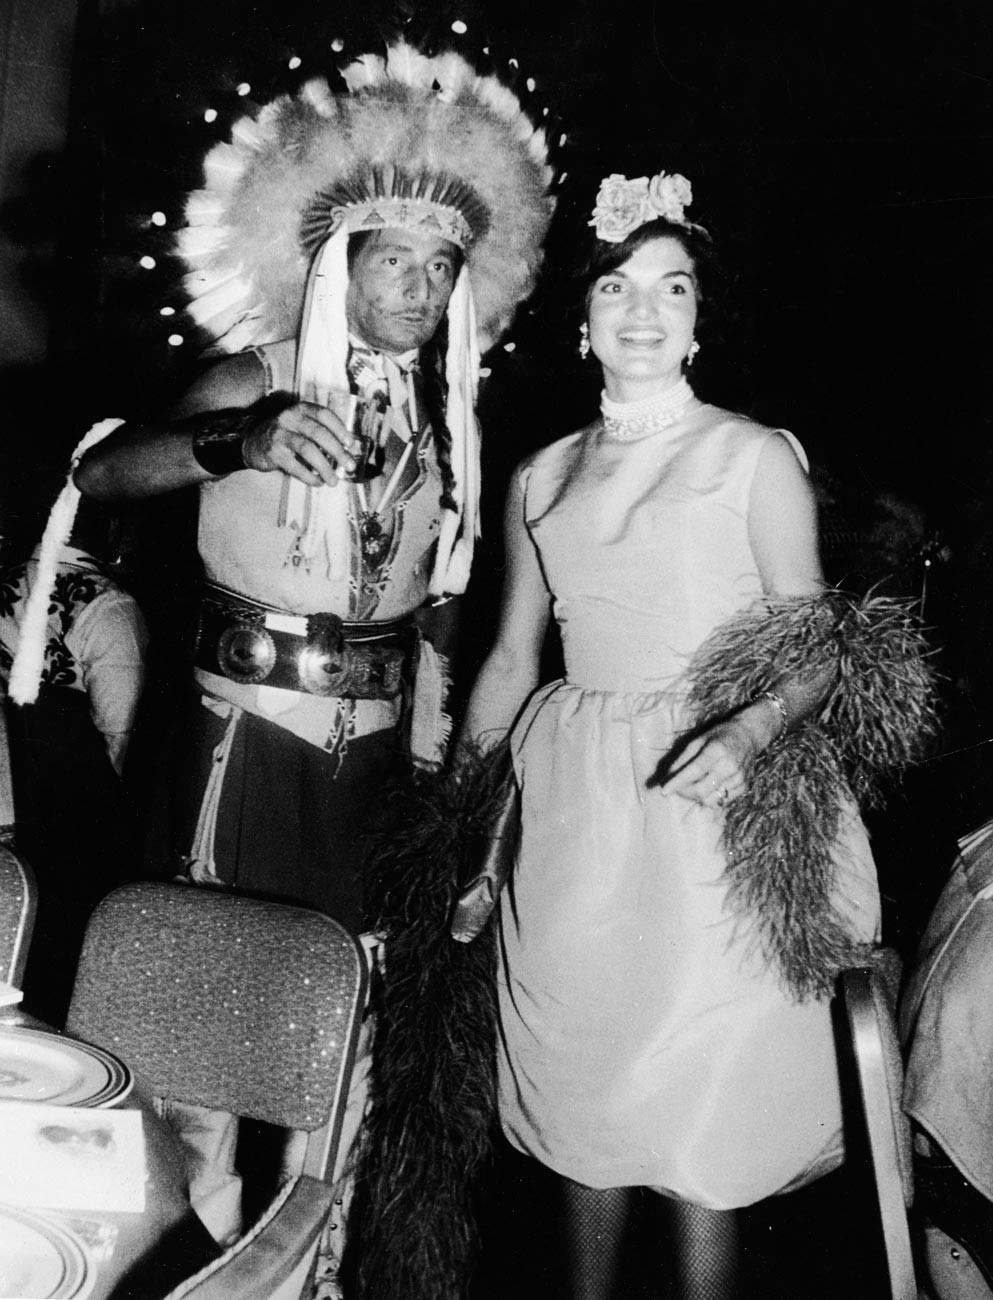 Oleg Cassini y Jacqueline Kennedy en una fiesta de disfraces a principios de los años 60
